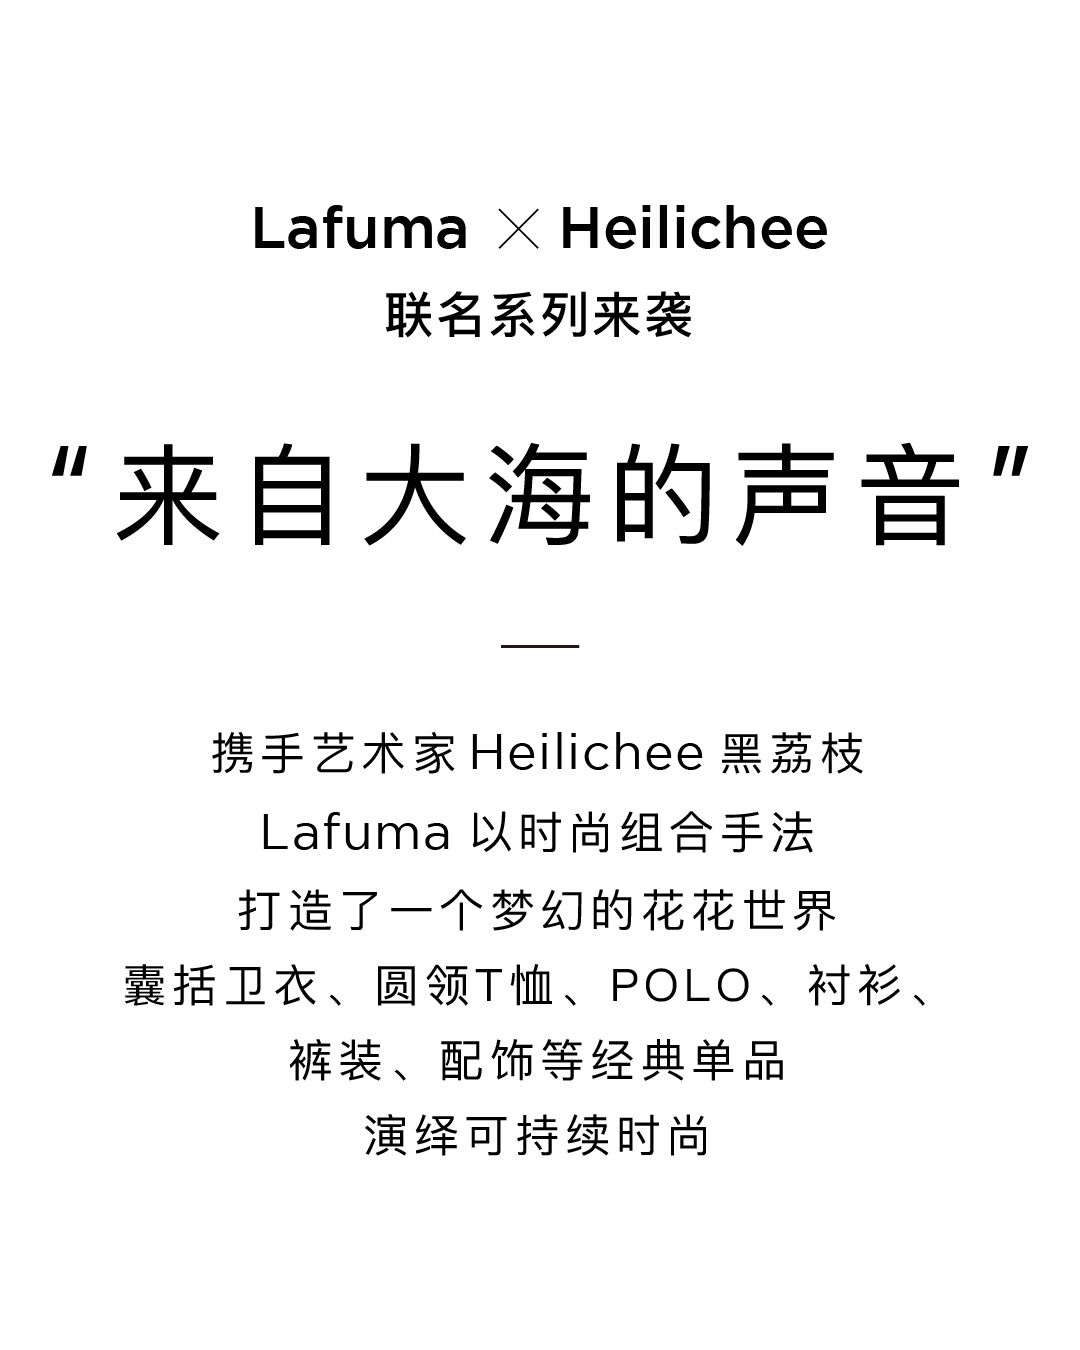 优可丝® X Lafuma X Heilichee花世界联名款现已上市